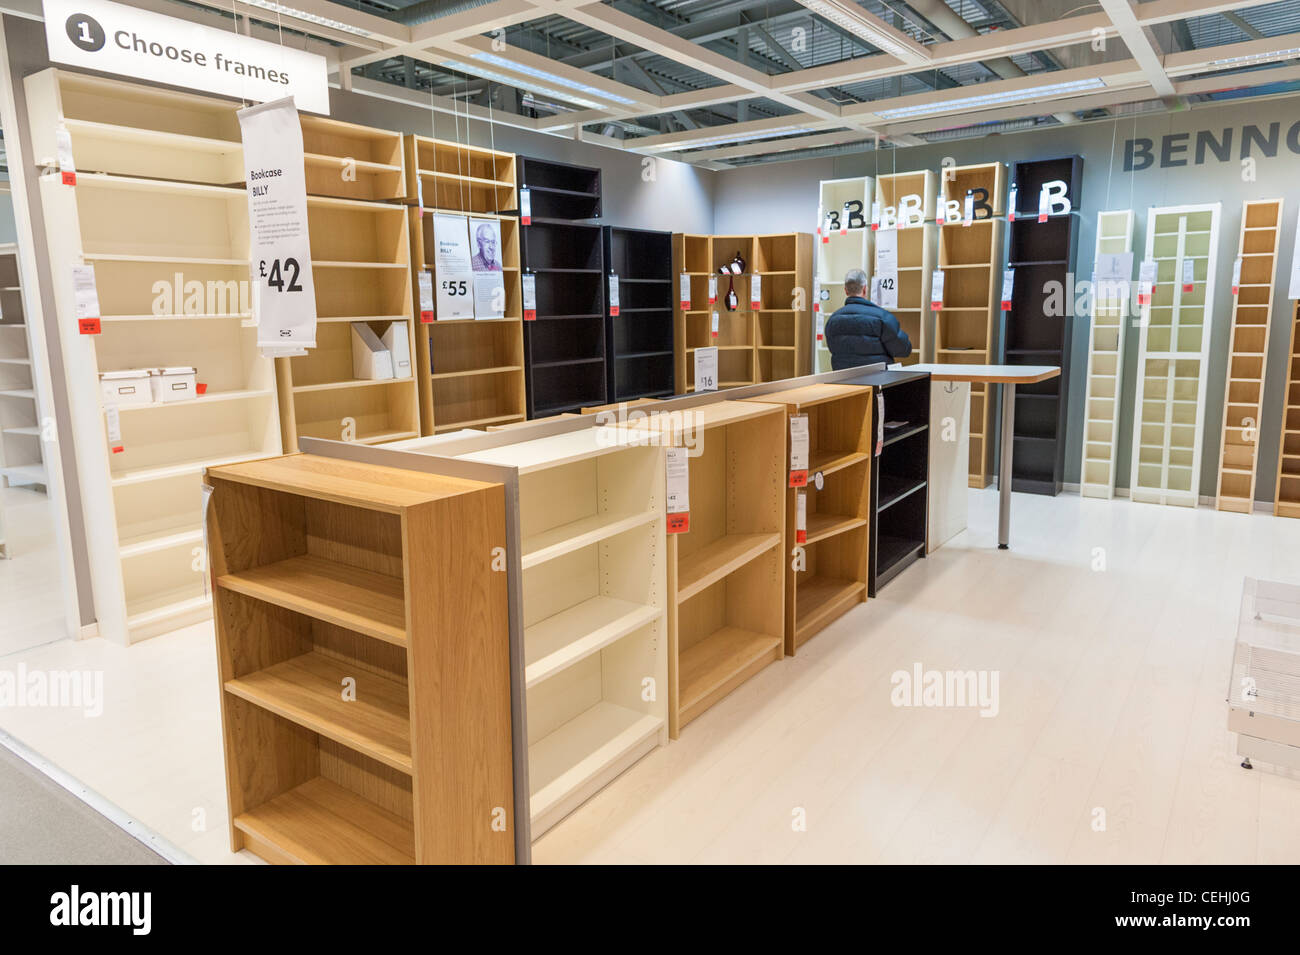 Ikea Mensola Muro Scaffale Scaffalatura Con Piede Per Libri